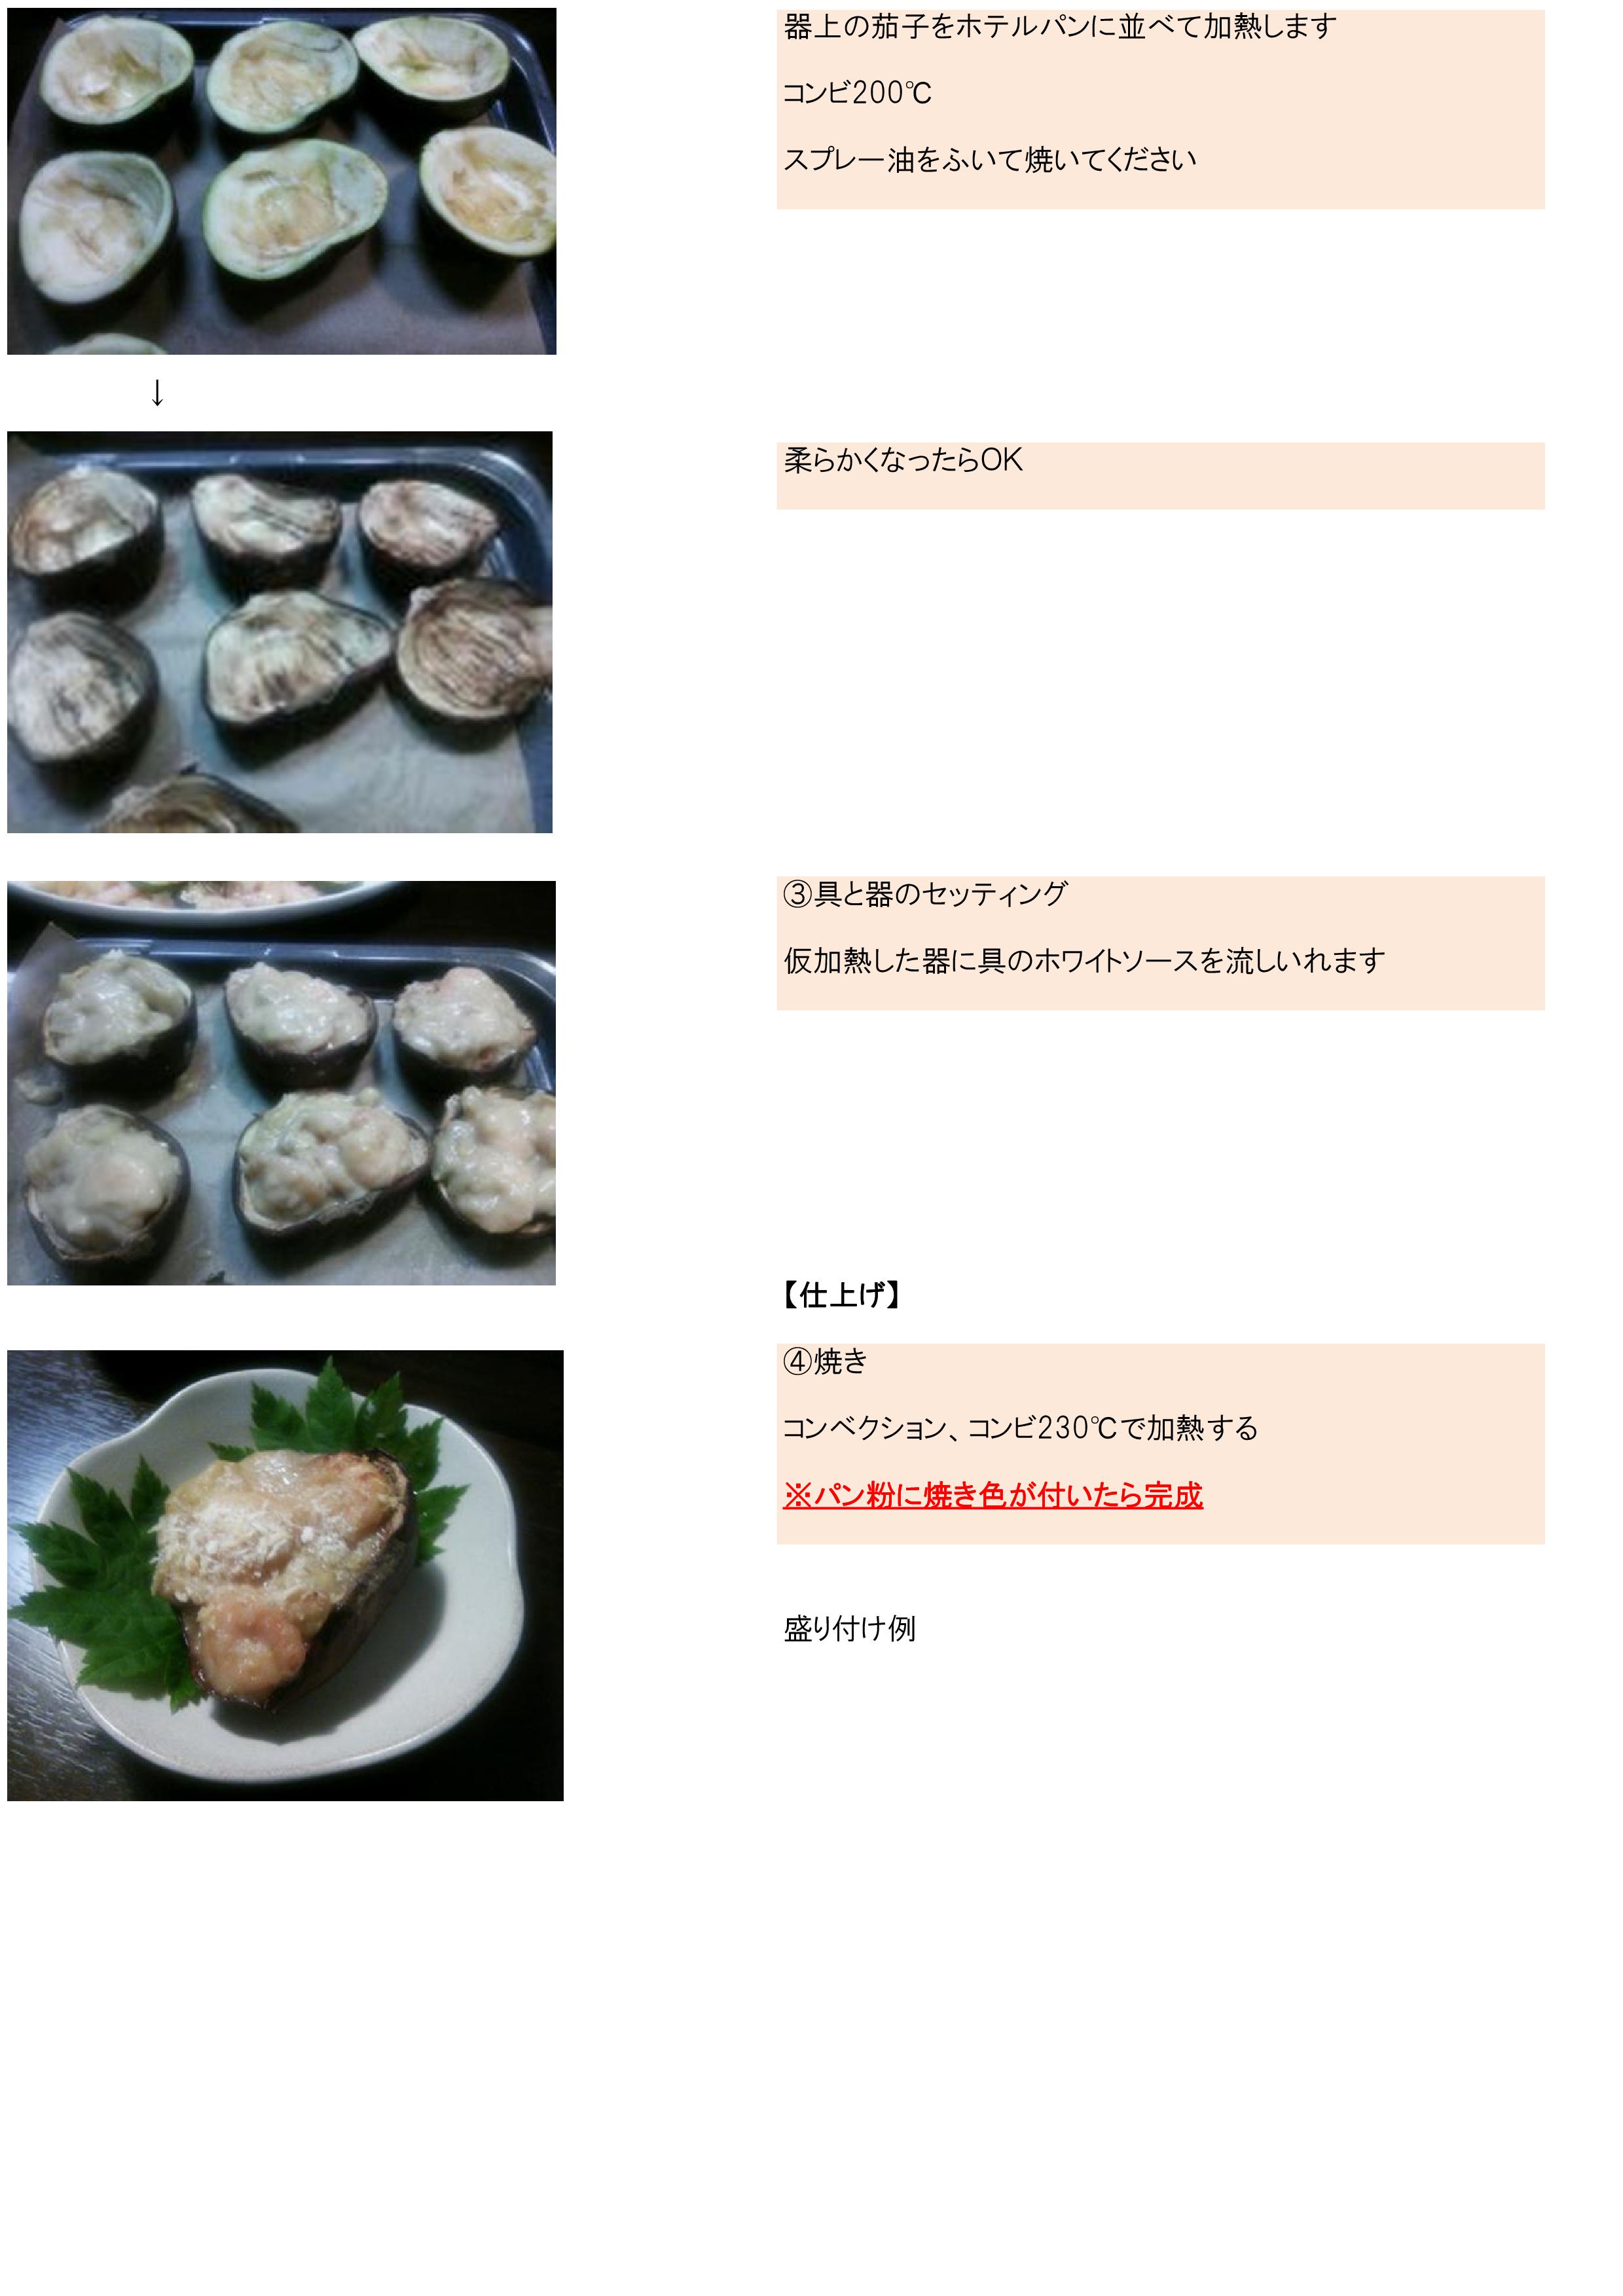 http://heisei-kai.jp/heiseikai-style-foods/report/kiji_images/%E8%8C%84%E5%AD%90%E3%81%84%E3%82%8D%E3%81%84%E3%82%8D%E3%83%95%E3%82%A7%E3%82%A2%E3%83%BC-003.jpg